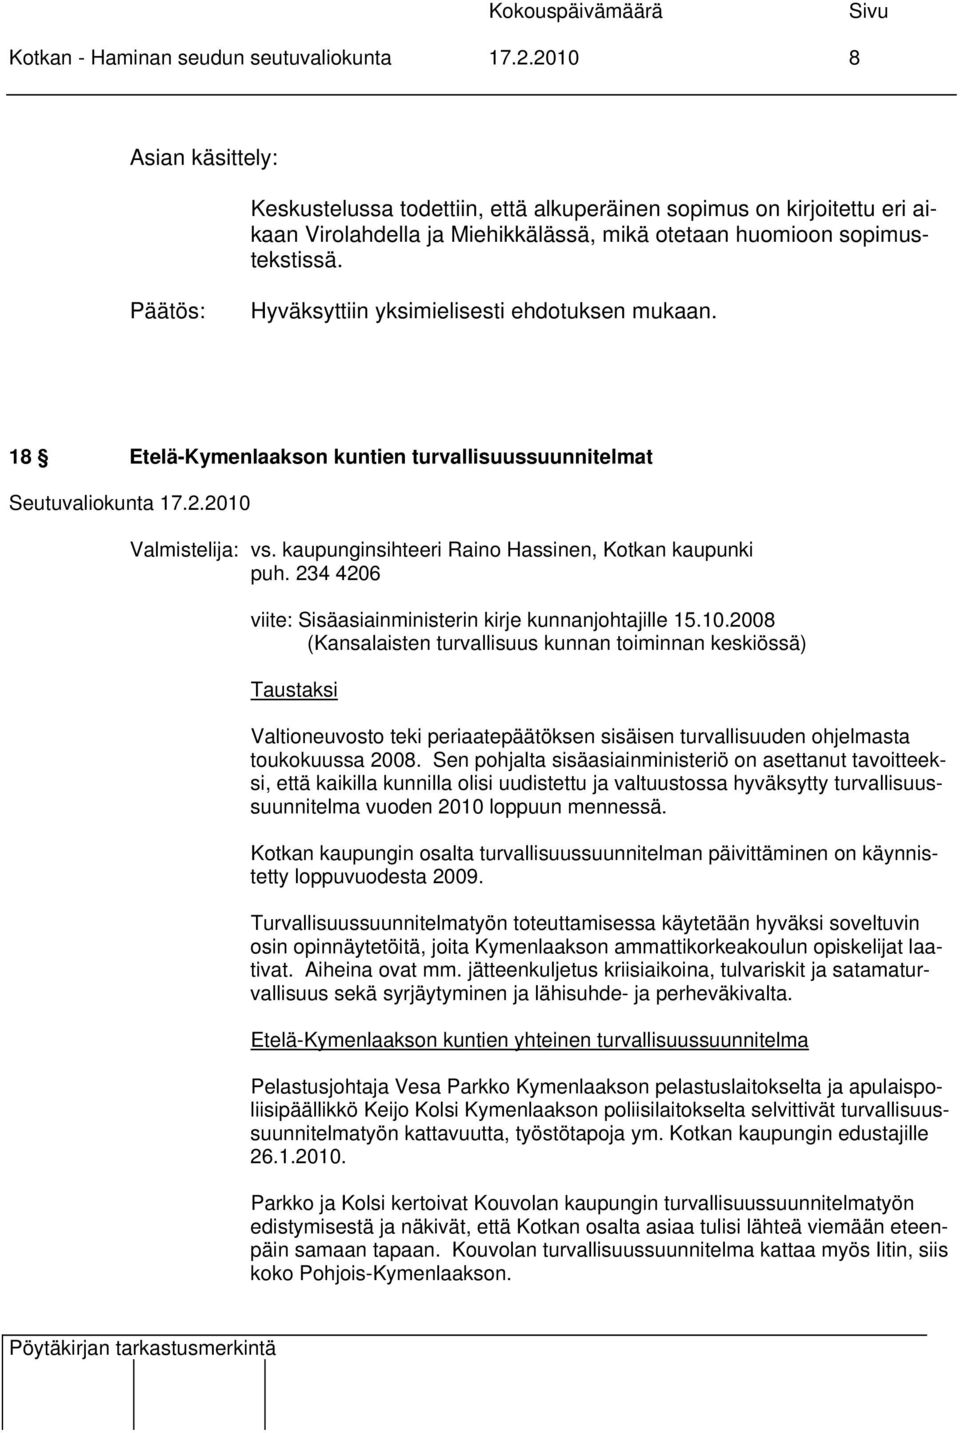 Hyväksyttiin yksimielisesti ehdotuksen mukaan. 18 Etelä-Kymenlaakson kuntien turvallisuussuunnitelmat Valmistelija: vs. kaupunginsihteeri Raino Hassinen, Kotkan kaupunki puh.